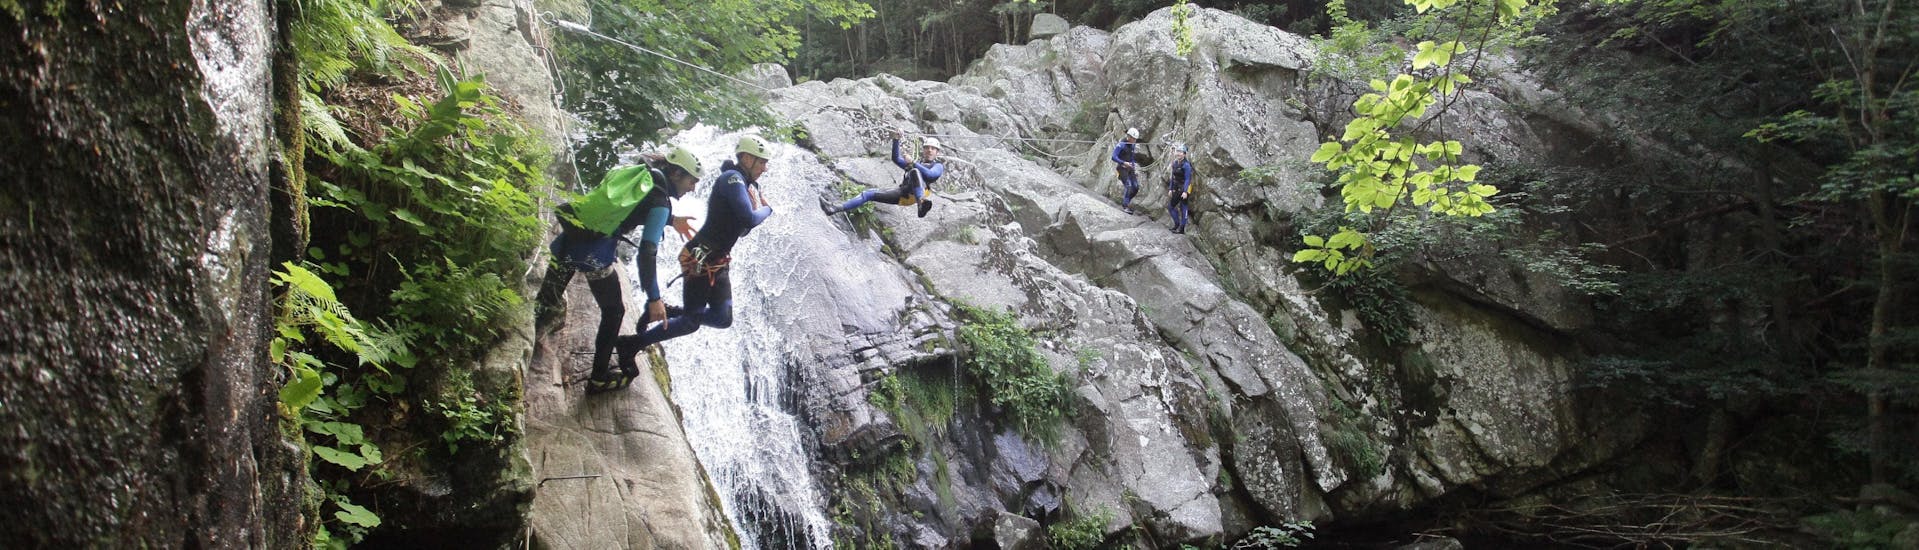 Beim Klassischen Canyoning in der Aéro Besorgues Schlucht mit Geo Ardèche Canyon überwindet eine Gruppe von Freunden verschiedene Hindernisse wie eine Zipline und Sprünge.